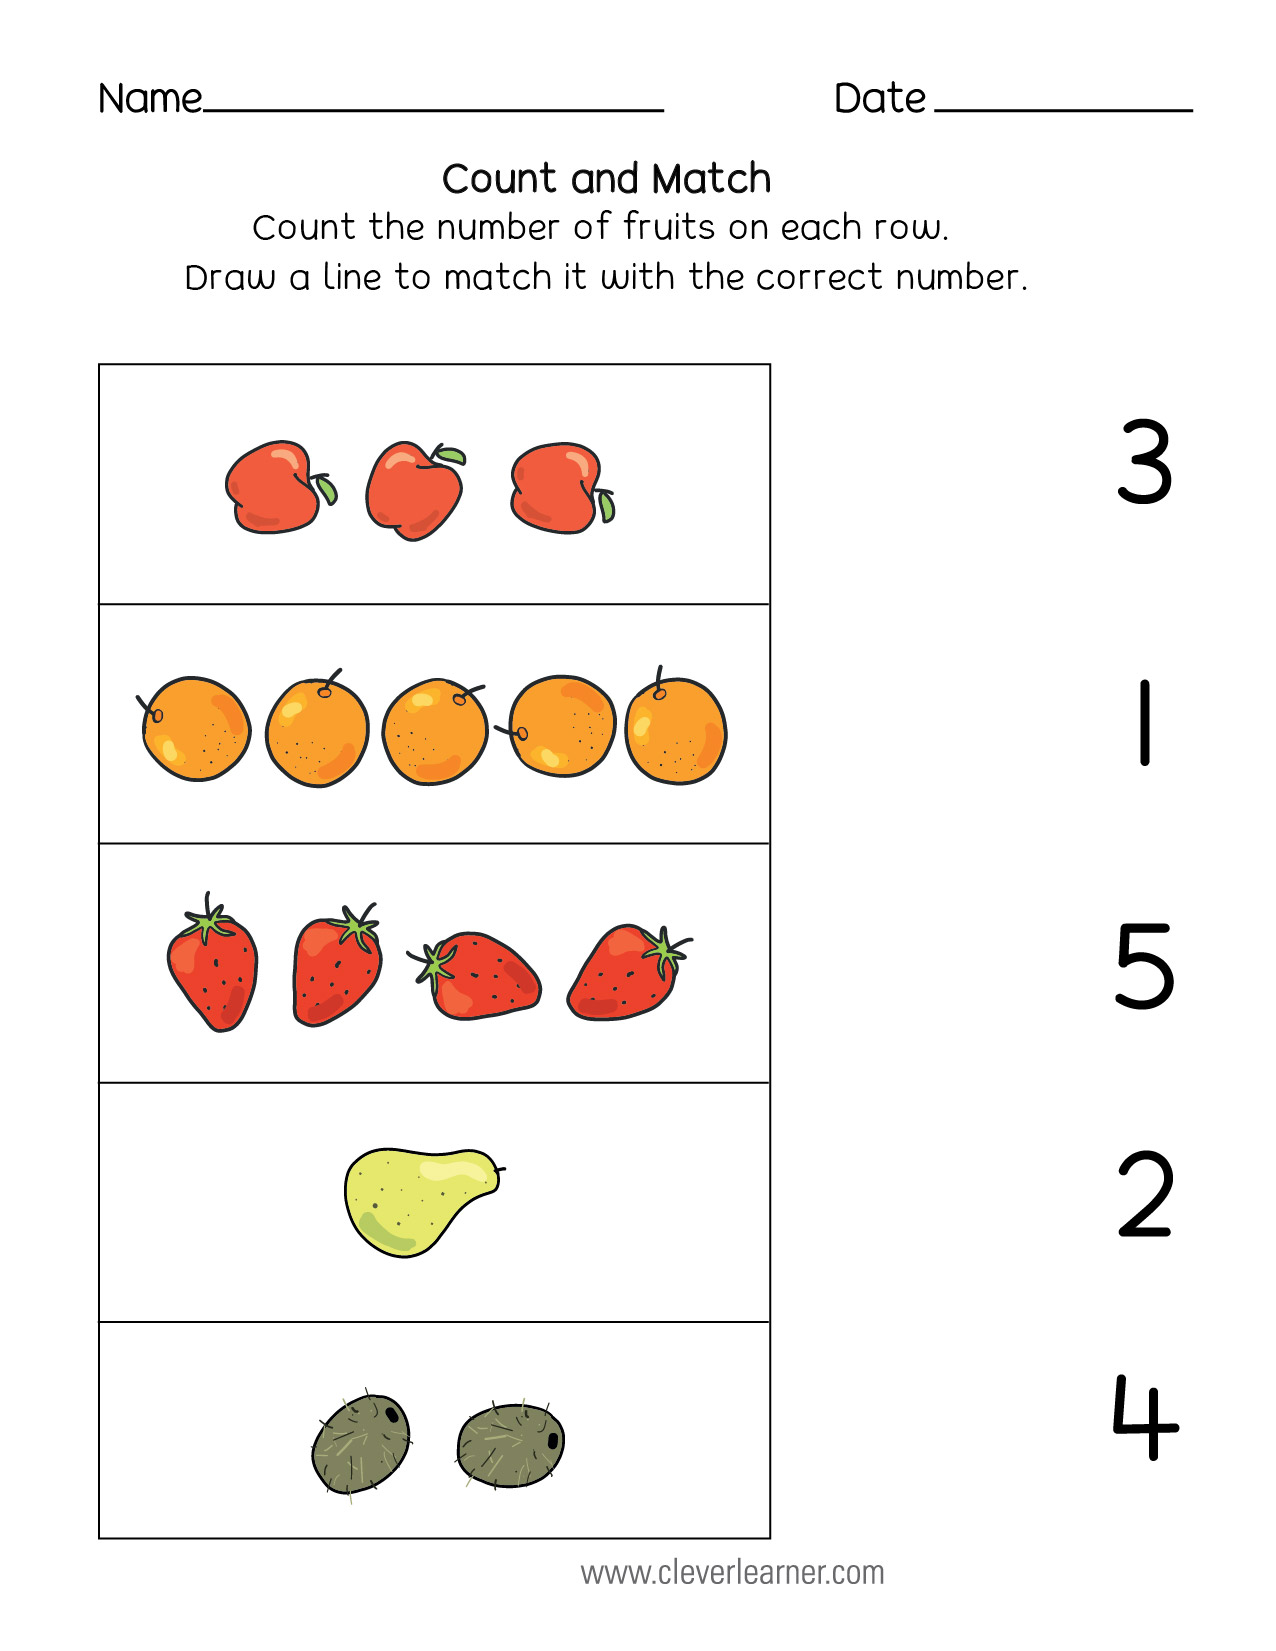 count-and-match-math-activities-preschool-kids-worksheets-preschool